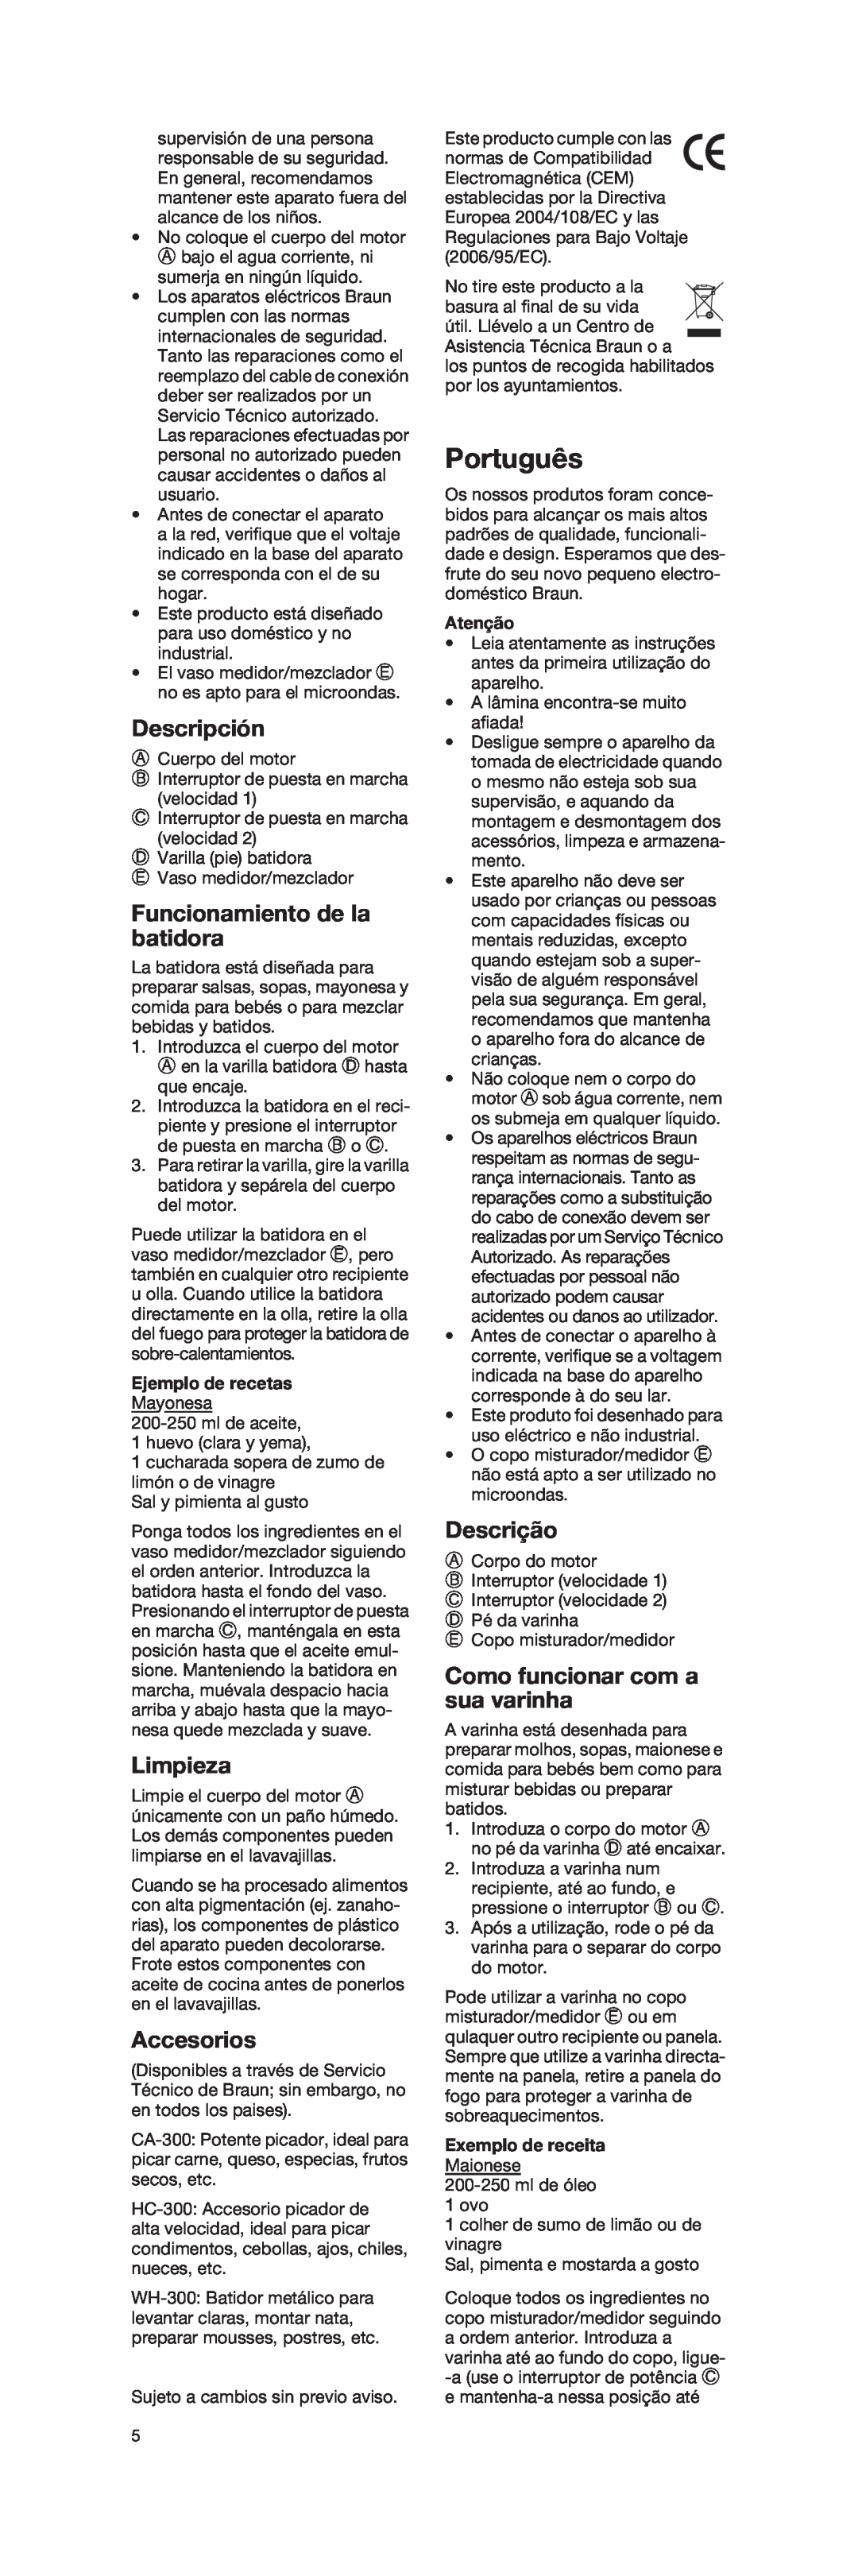 Braun 4162 Português, Descripción, Funcionamiento de la batidora, Limpieza, Accesorios, Descrição, Ejemplo de recetas 